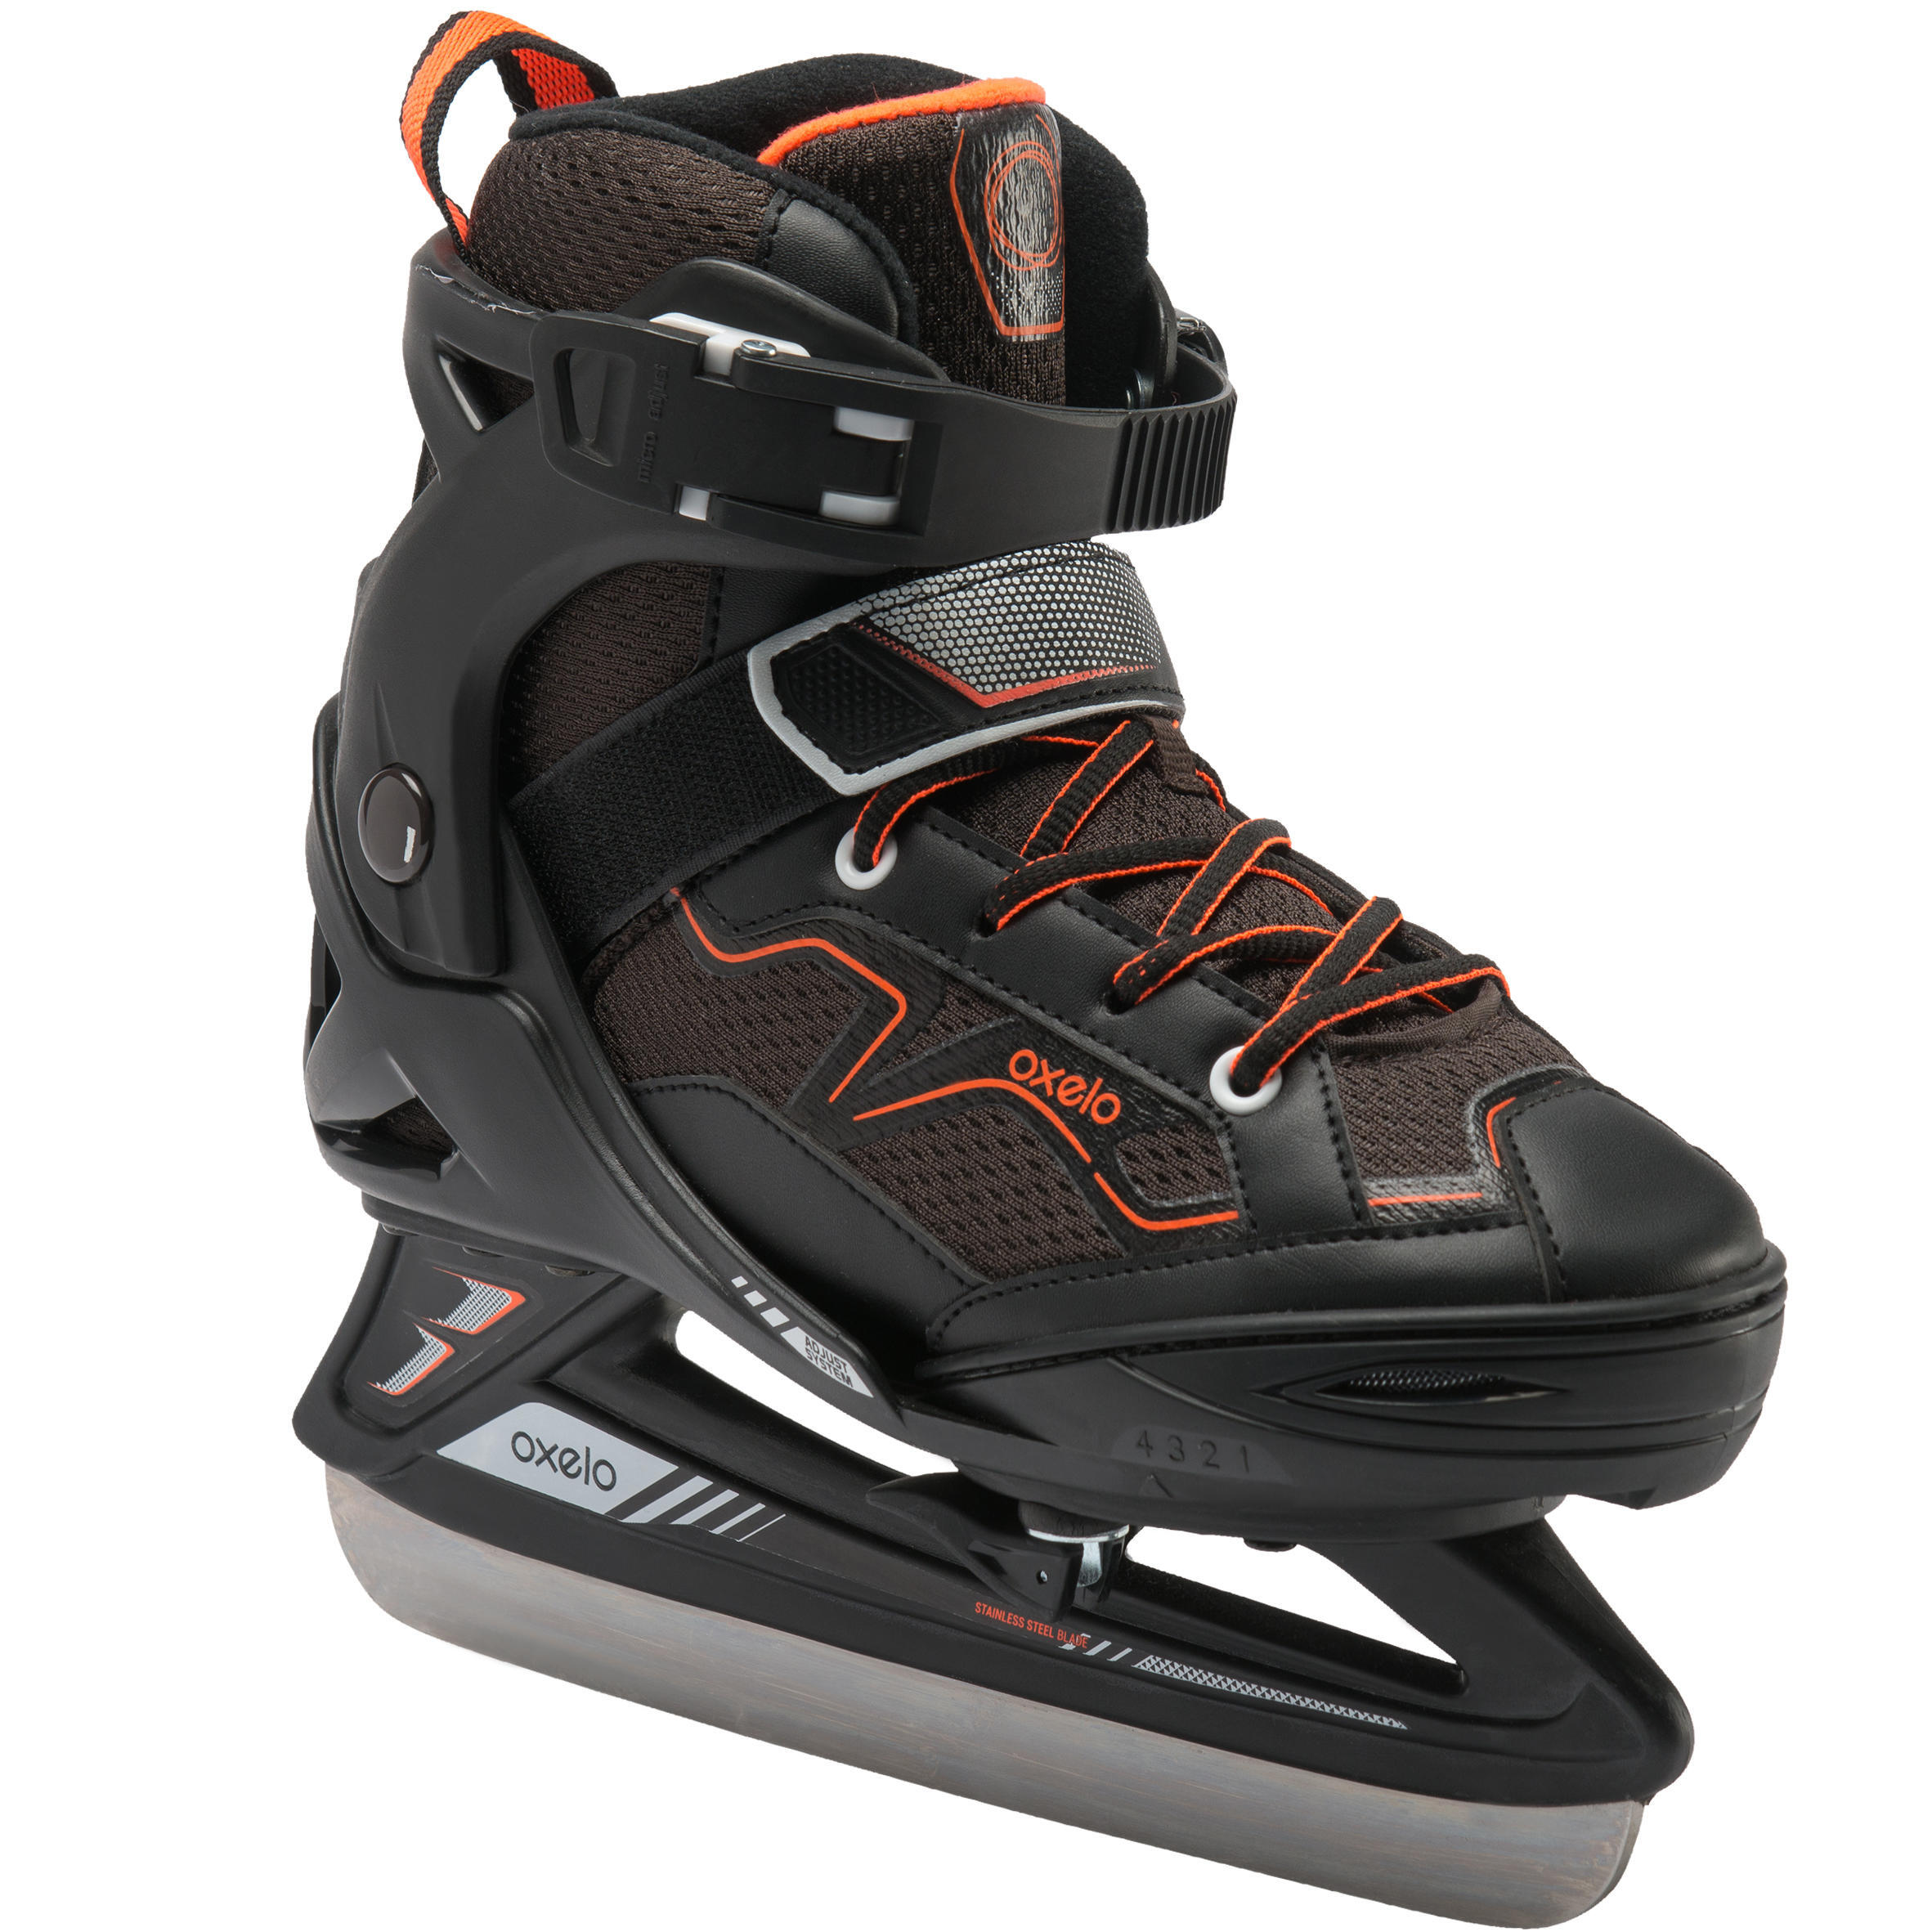 Kids' Ice Skates Fit 100 - Black/Orange 1/8